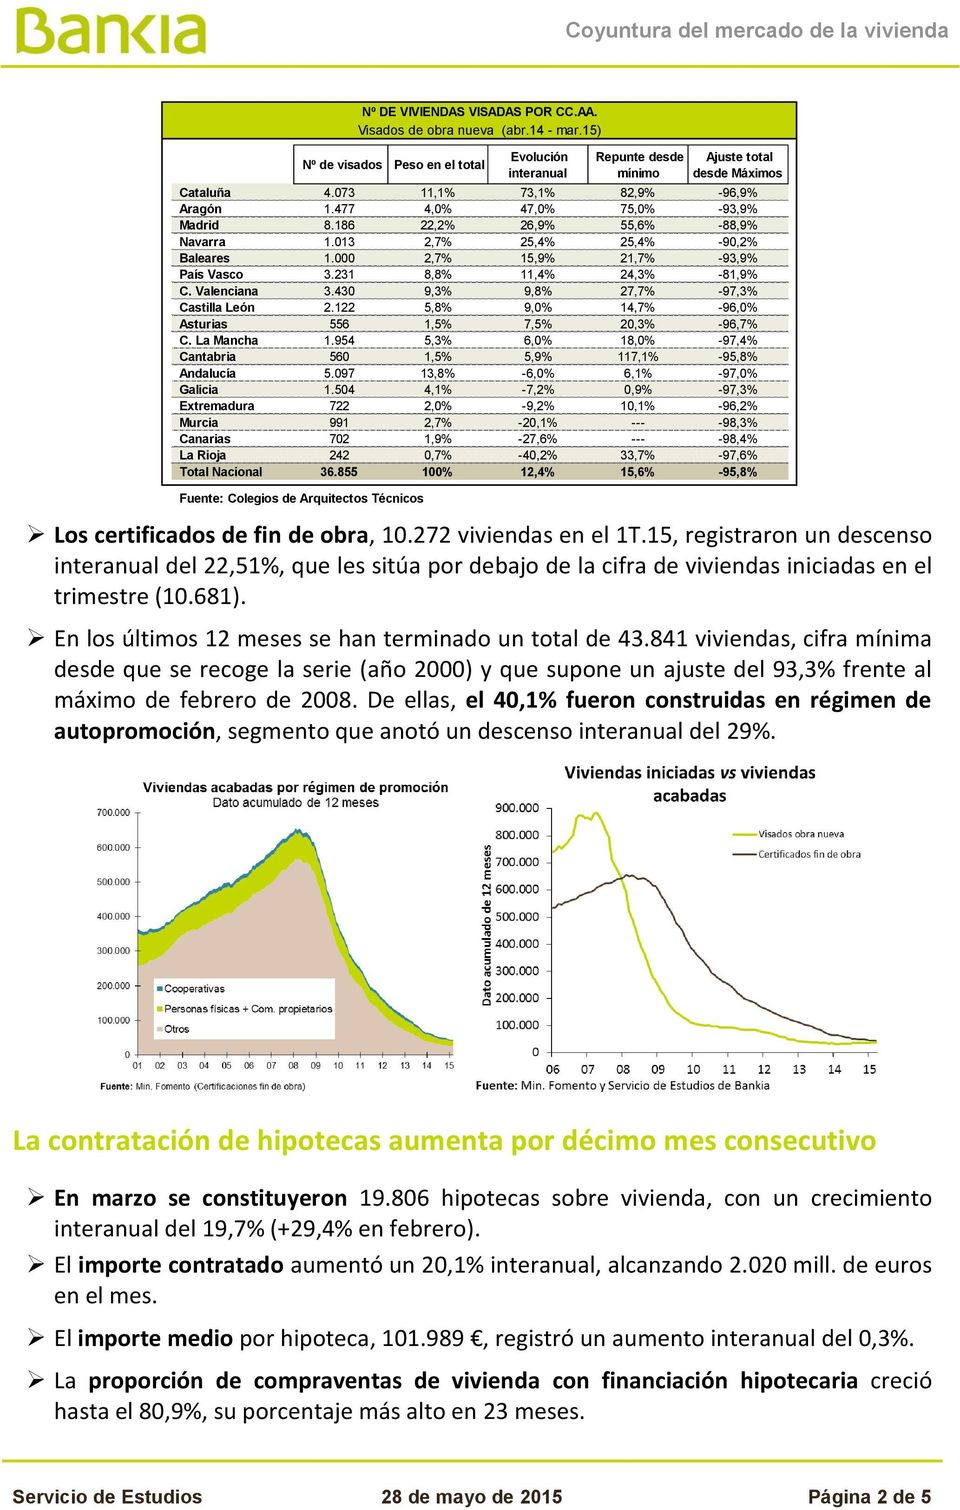 430 9,3% 9,8% 27,7% -97,3% Castilla León 2.122 5,8% 9,0% 14,7% -96,0% Asturias 556 1,5% 7,5% 20,3% -96,7% C. La Mancha 1.954 5,3% 6,0% 18,0% -97,4% Cantabria 560 1,5% 5,9% 117,1% -95,8% Andalucía 5.